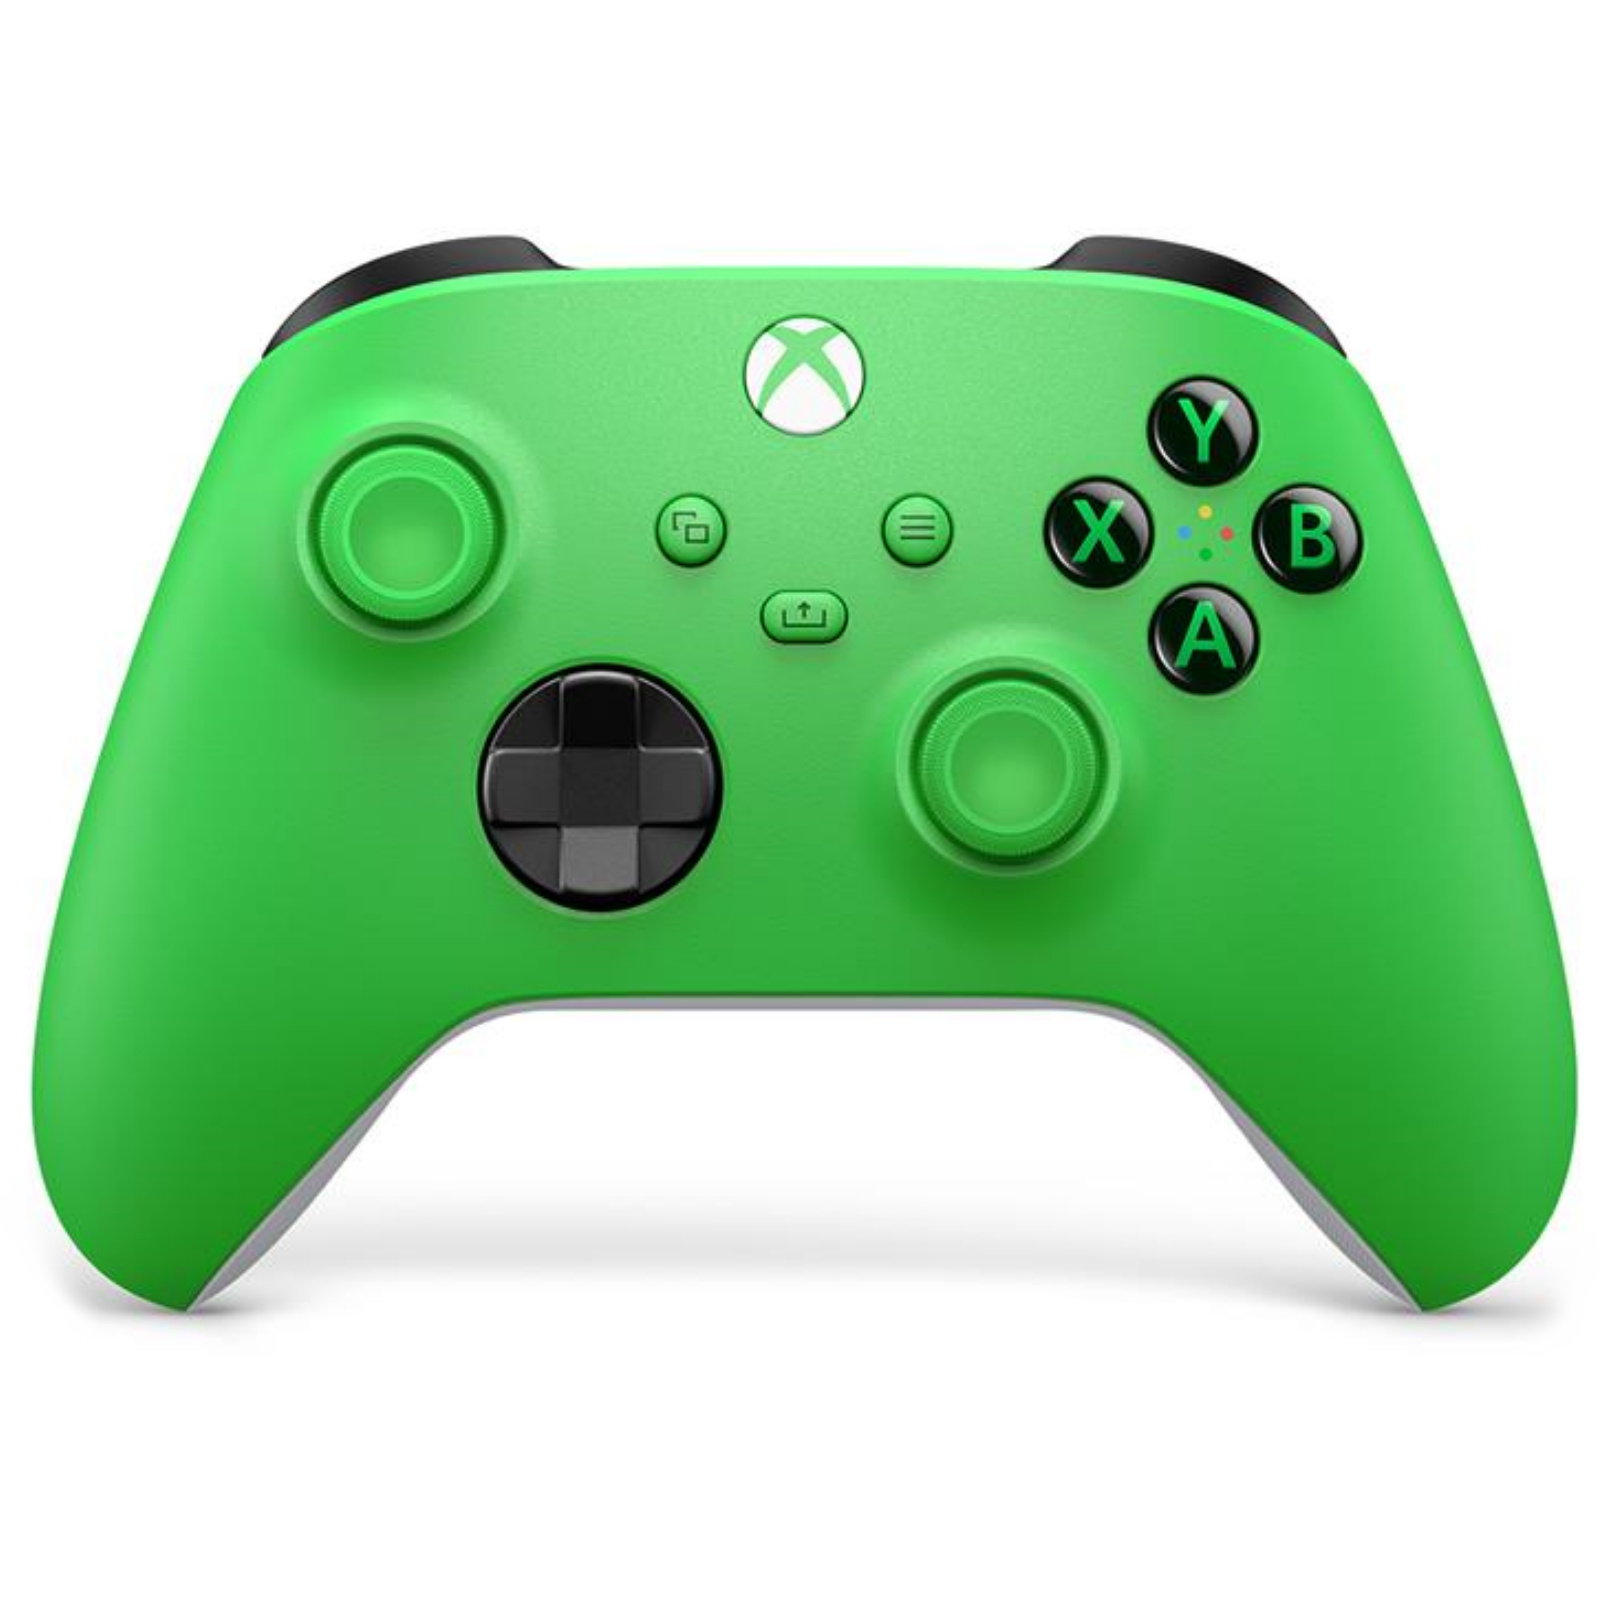 Controller không chỉ là công cụ để chơi game, nó còn là một phần của đam mê chơi game của bạn. Xbox Wireless Controller - Velocity Green sẽ khiến bạn phải mê mẩn với màu sắc tuyệt đẹp và đầy sức sống. Hãy xem hình ảnh để khám phá thiết kế độc đáo và tinh tế của chiếc tay cầm này!